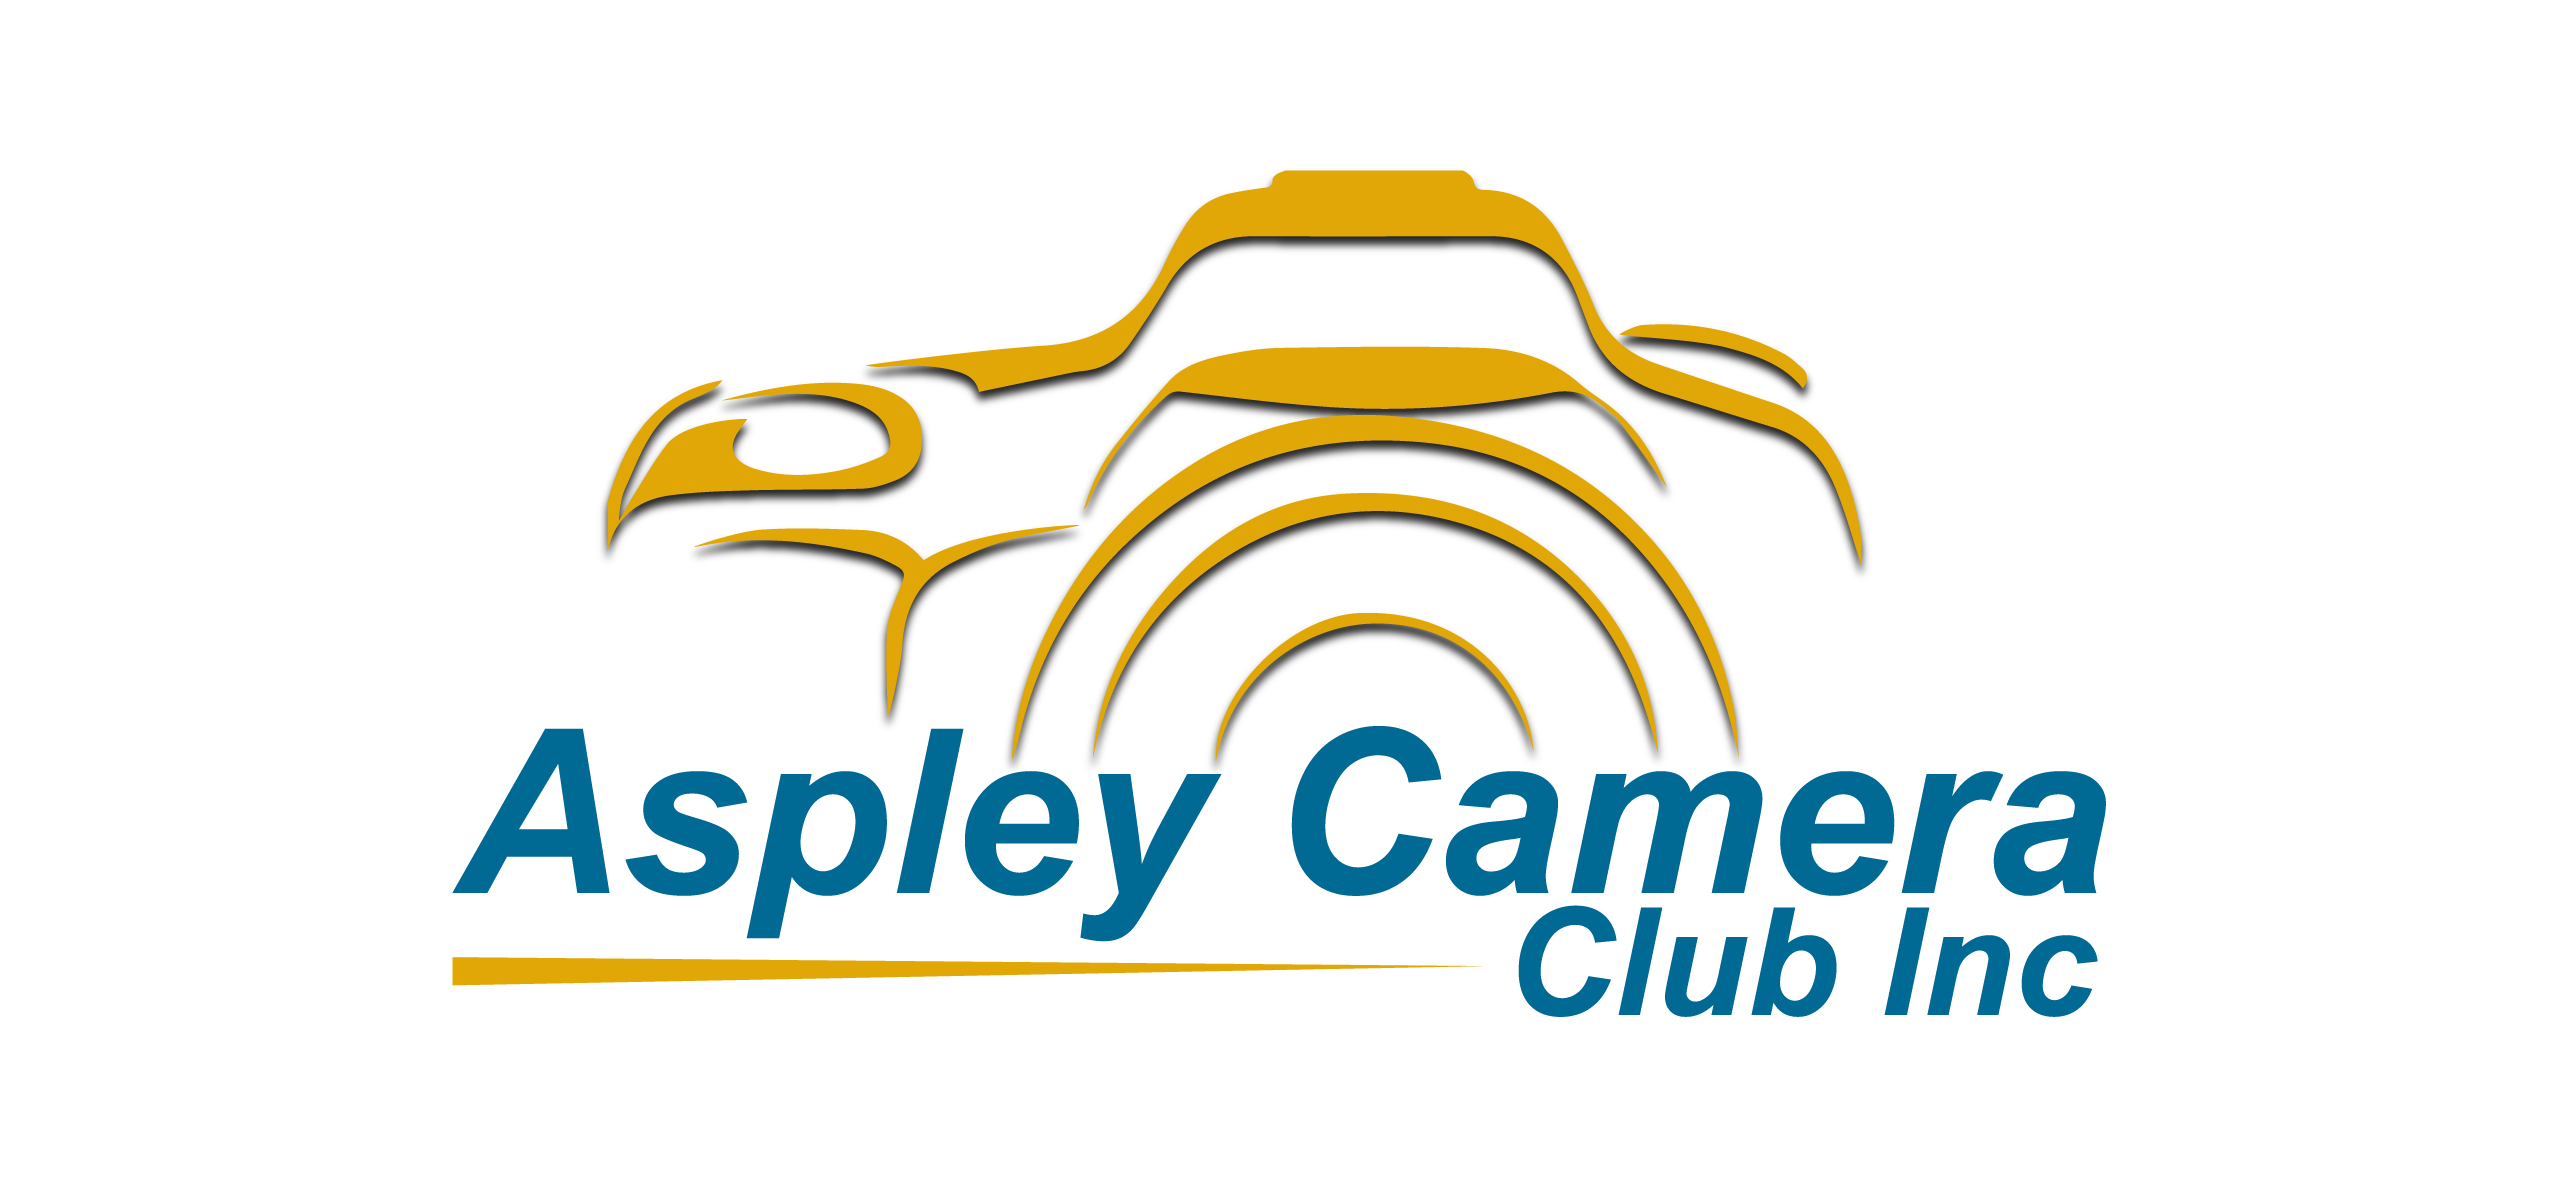 Aspley Camera Club Inc